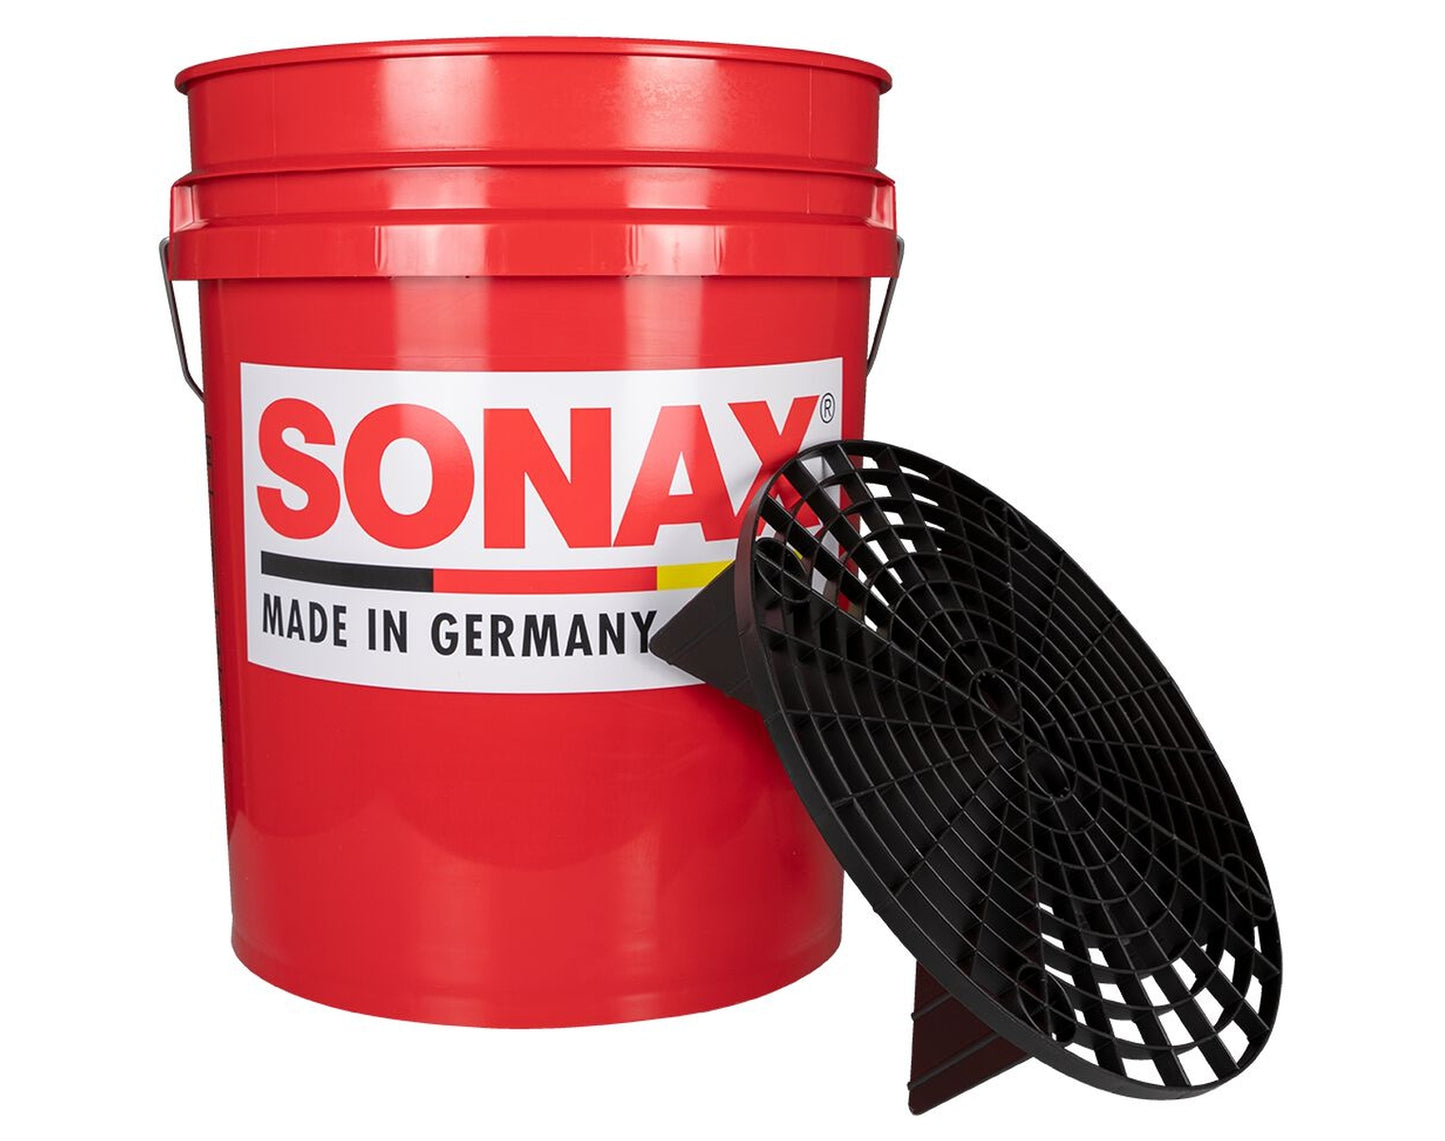 Sonax Grit Guard Eimer rot, 18.9 Liter (ohne Deckel)